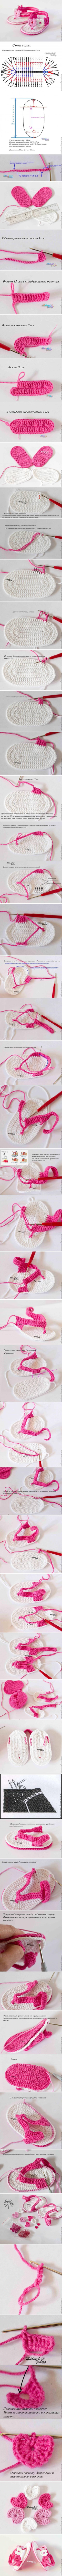 DIY Adorable Crochet Baby Sandals